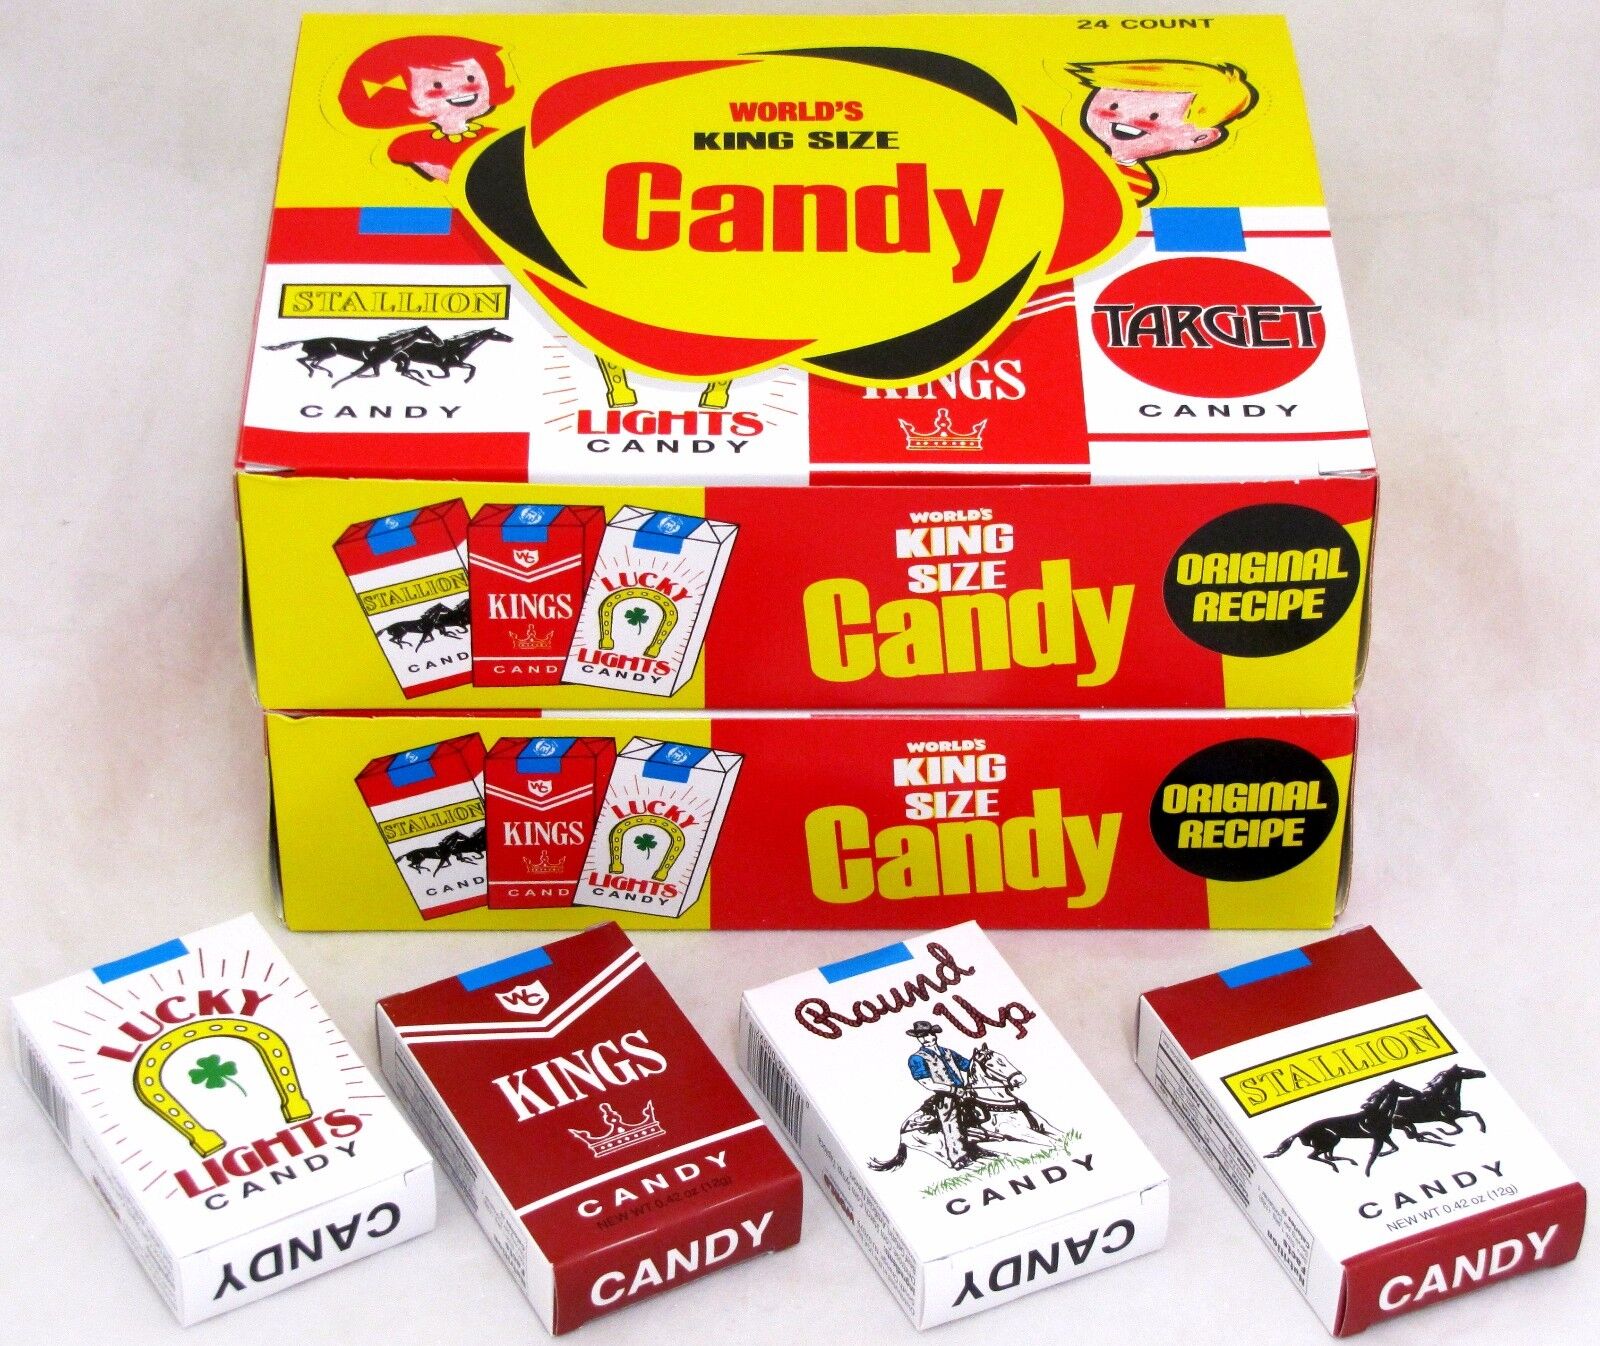 World's - Original Candy Sticks - 27g (1 pack)